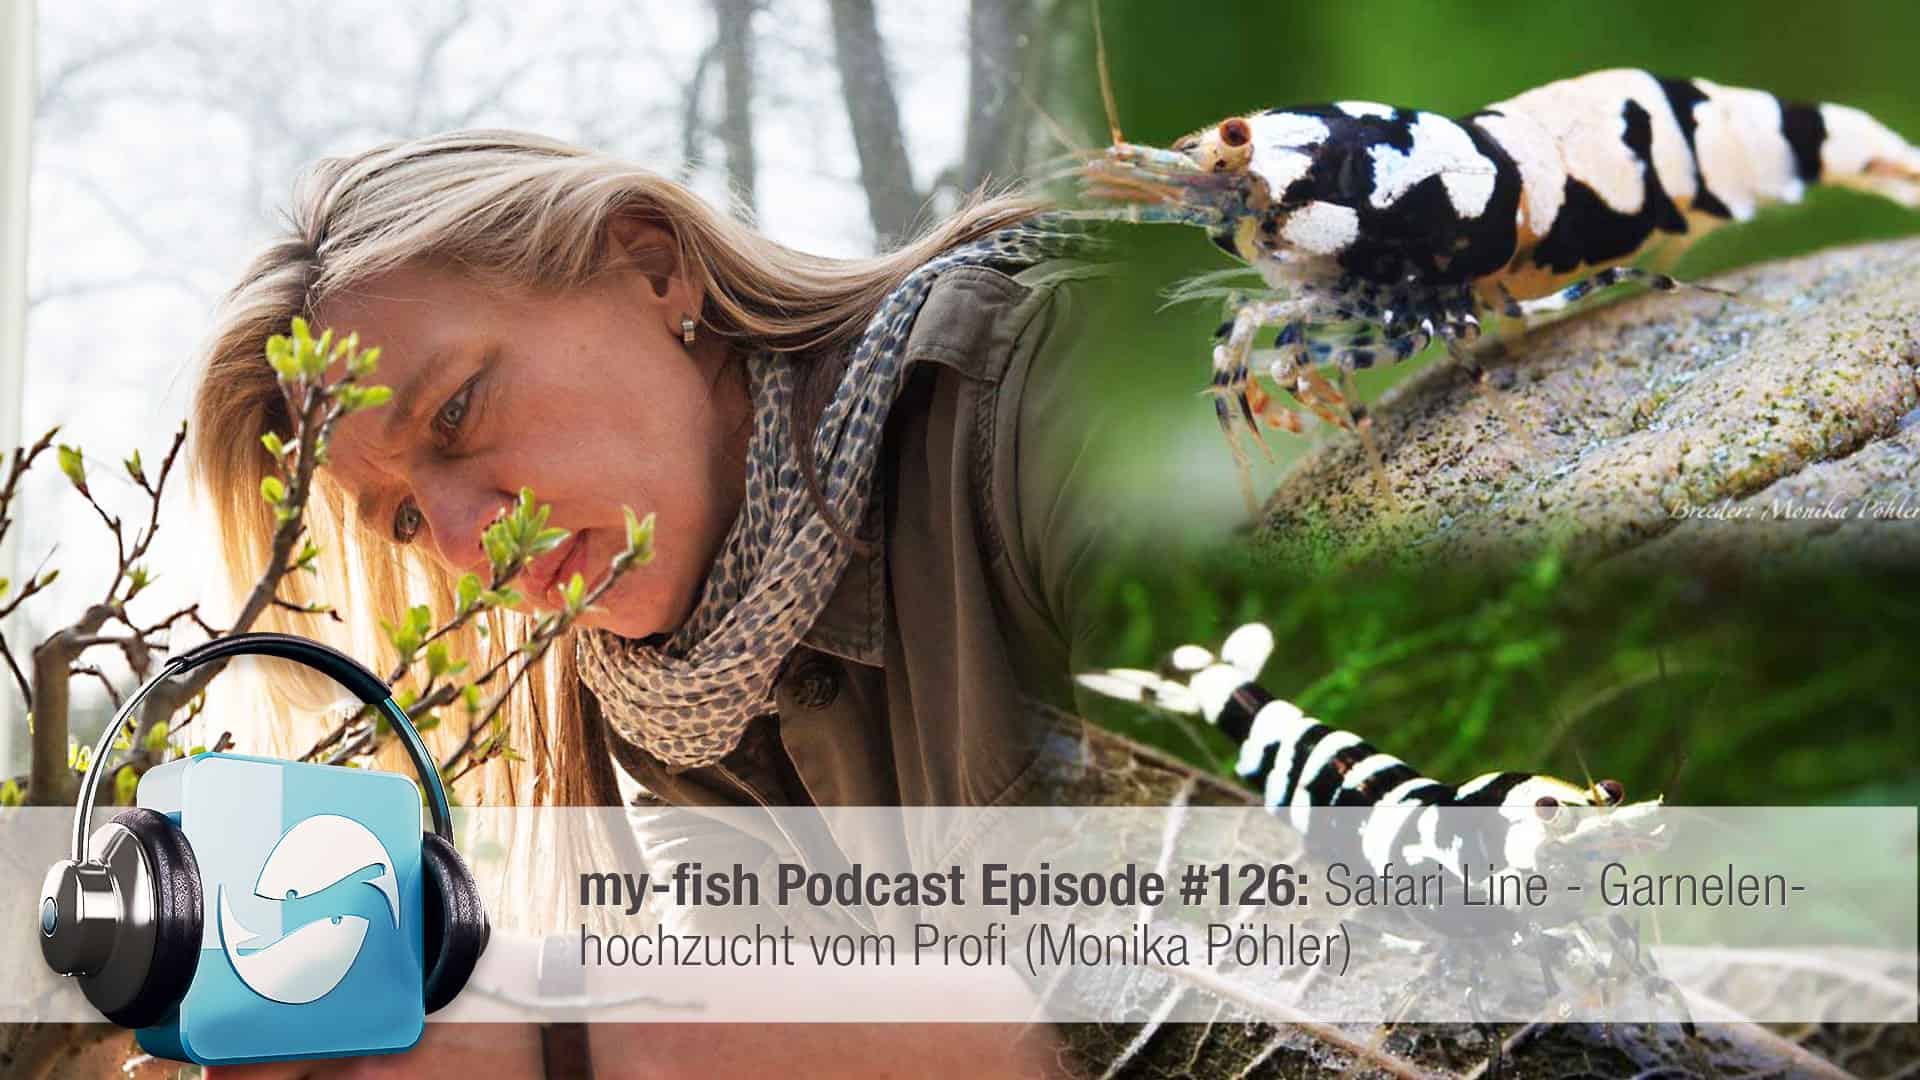 Podcast Episode #126: Safari Line - Garnelenhochzucht vom Profi (Monika Pöhler)